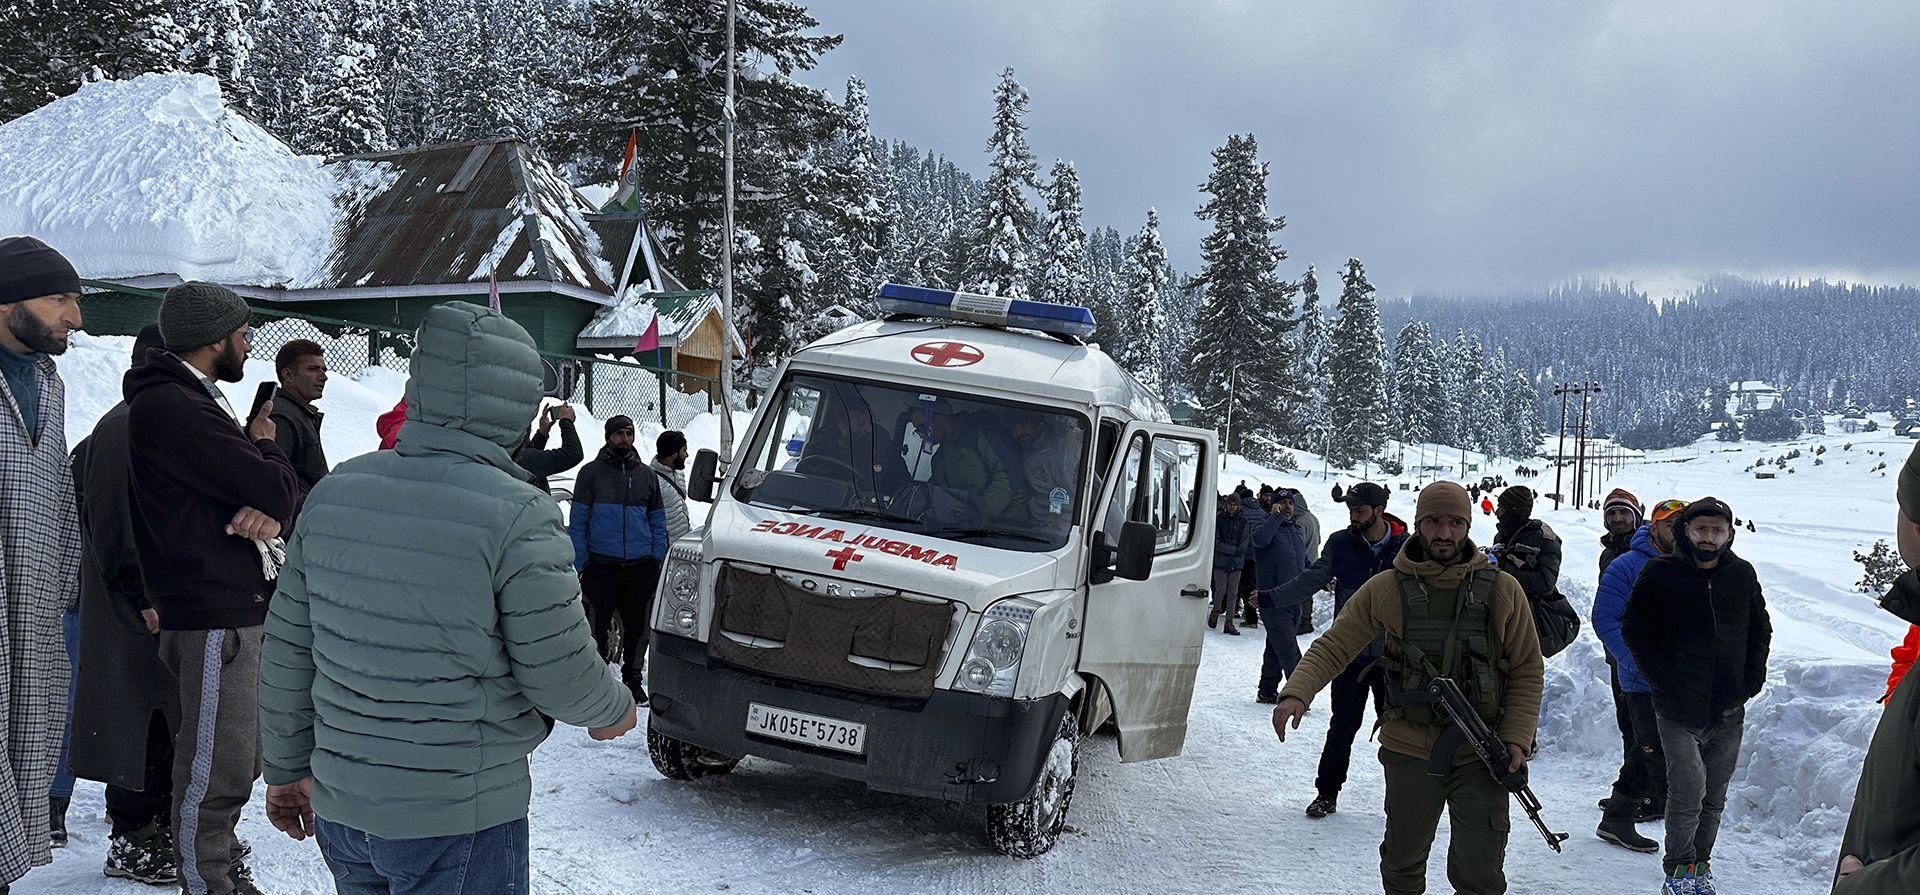 Una ambulancia sale con los cuerpos de dos extranjeros que murieron en una avalancha en Gulmarg, a 55 kilómetros de Srinagar, en la Cachemira india, el miércoles 1 de febrero de 2023. Una avalancha en una estación de esquí del Himalaya  mató a dos esquiadores extranjeros mientras que otros 21 fueron rescatados, dijo la policía. (Foto AP/Umar Mehraj)